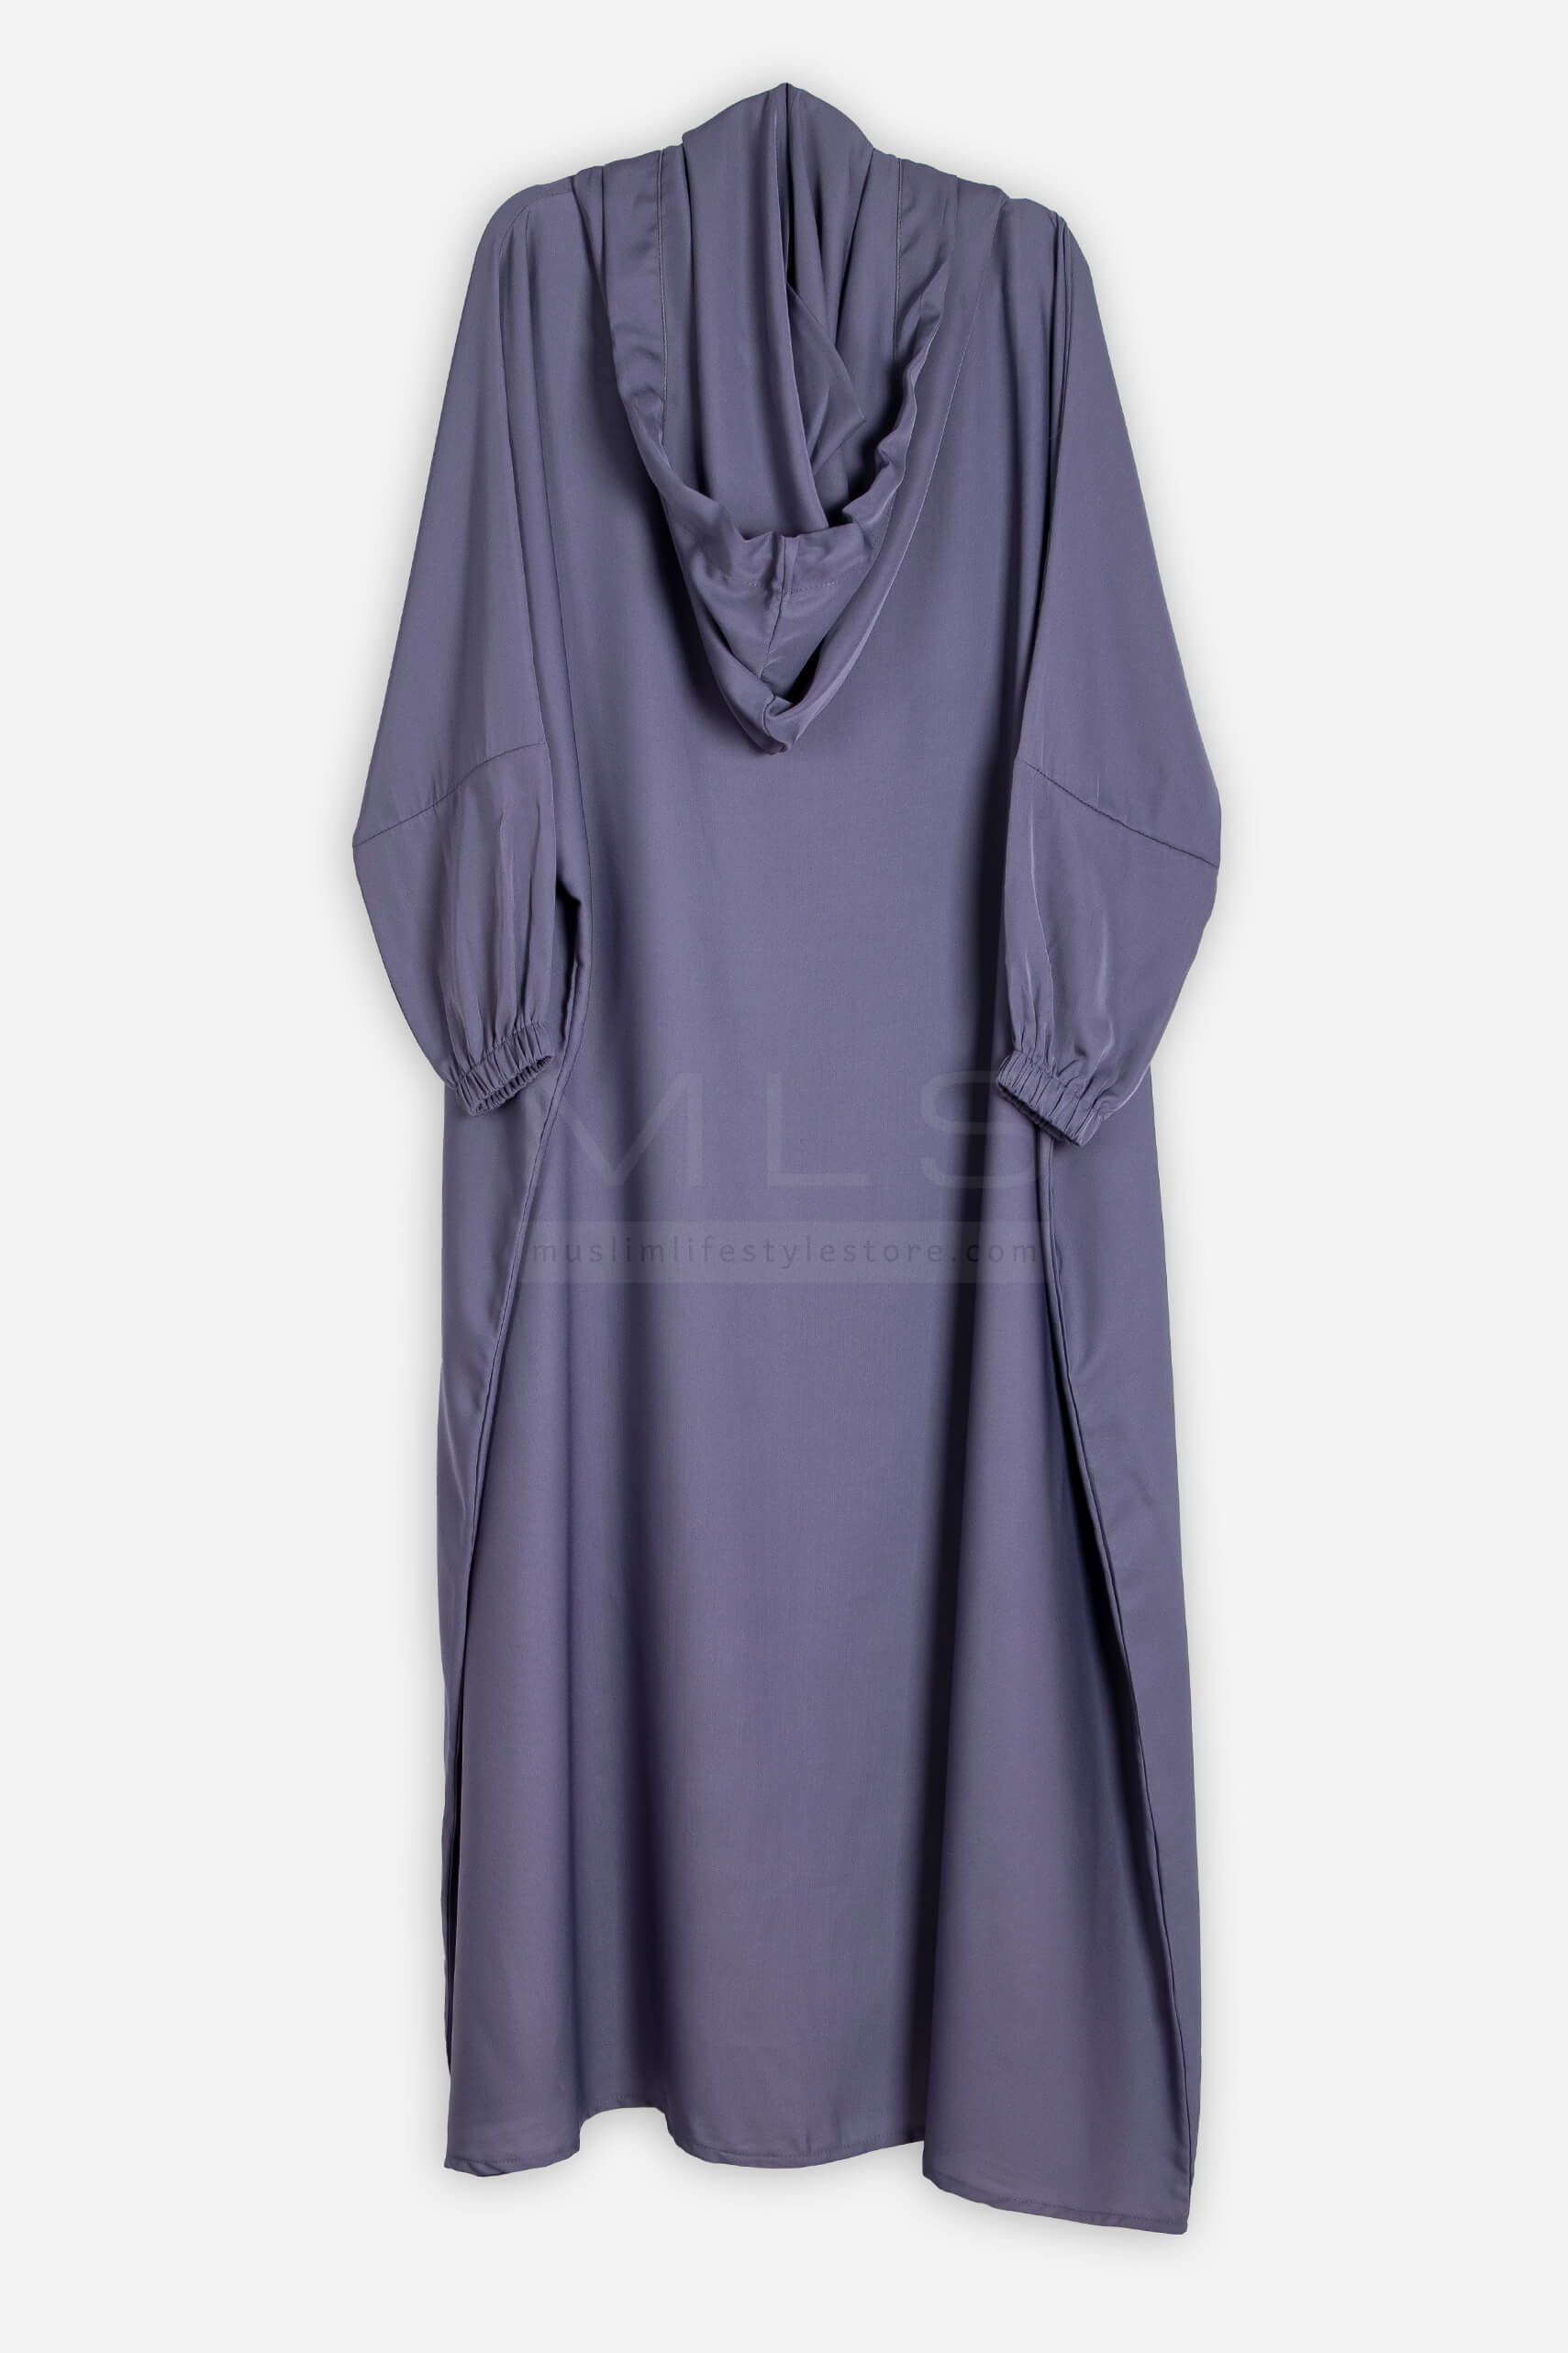 Gray Stylish Cap Jilbab - Jilbab - Muslim Lifestyle Store